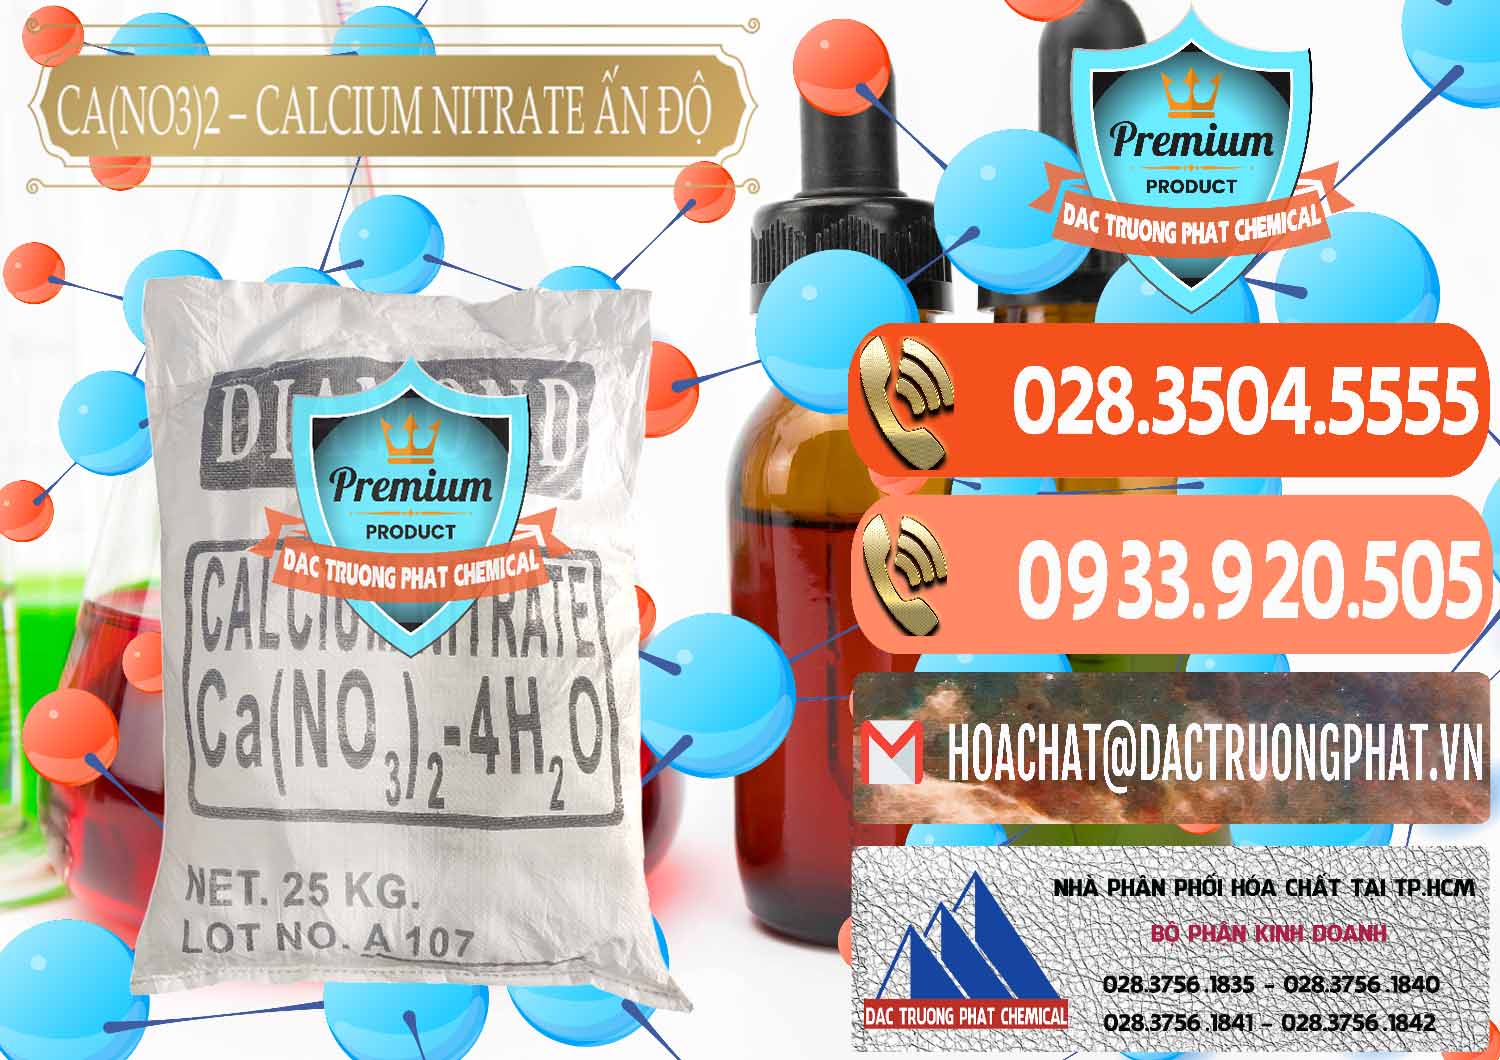 Nơi chuyên bán ( cung ứng ) CA(NO3)2 – Calcium Nitrate Ấn Độ India - 0038 - Đơn vị nhập khẩu - phân phối hóa chất tại TP.HCM - hoachatmientay.com